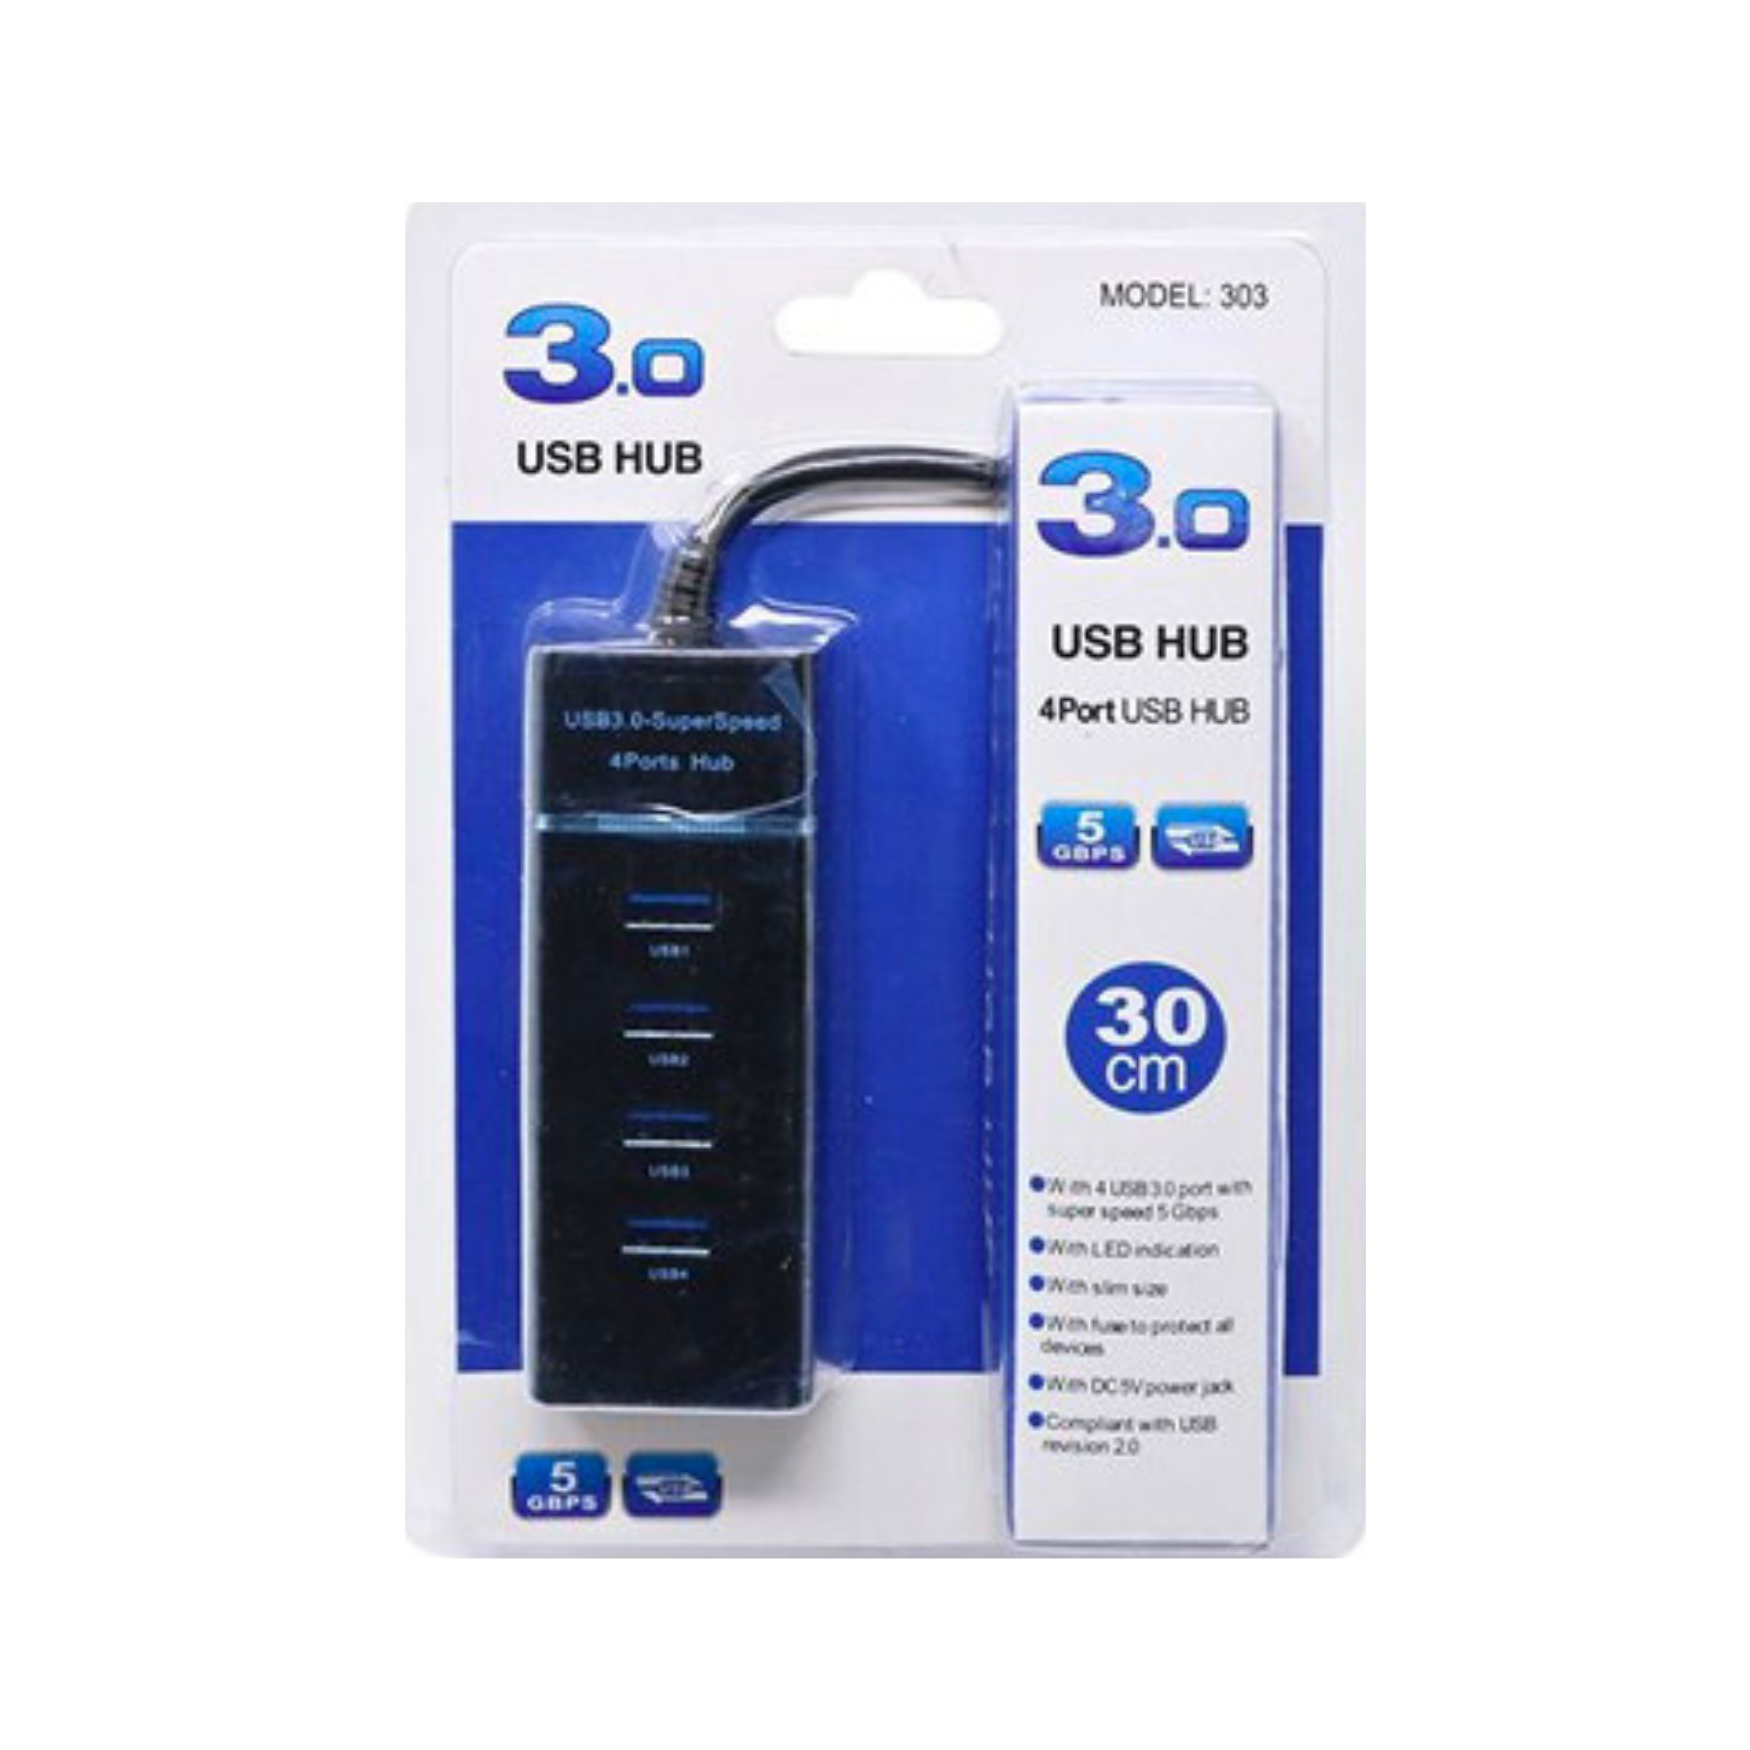 3.0 USB HUB 4 PORTS (MODEL-303) [USB HUB-1]